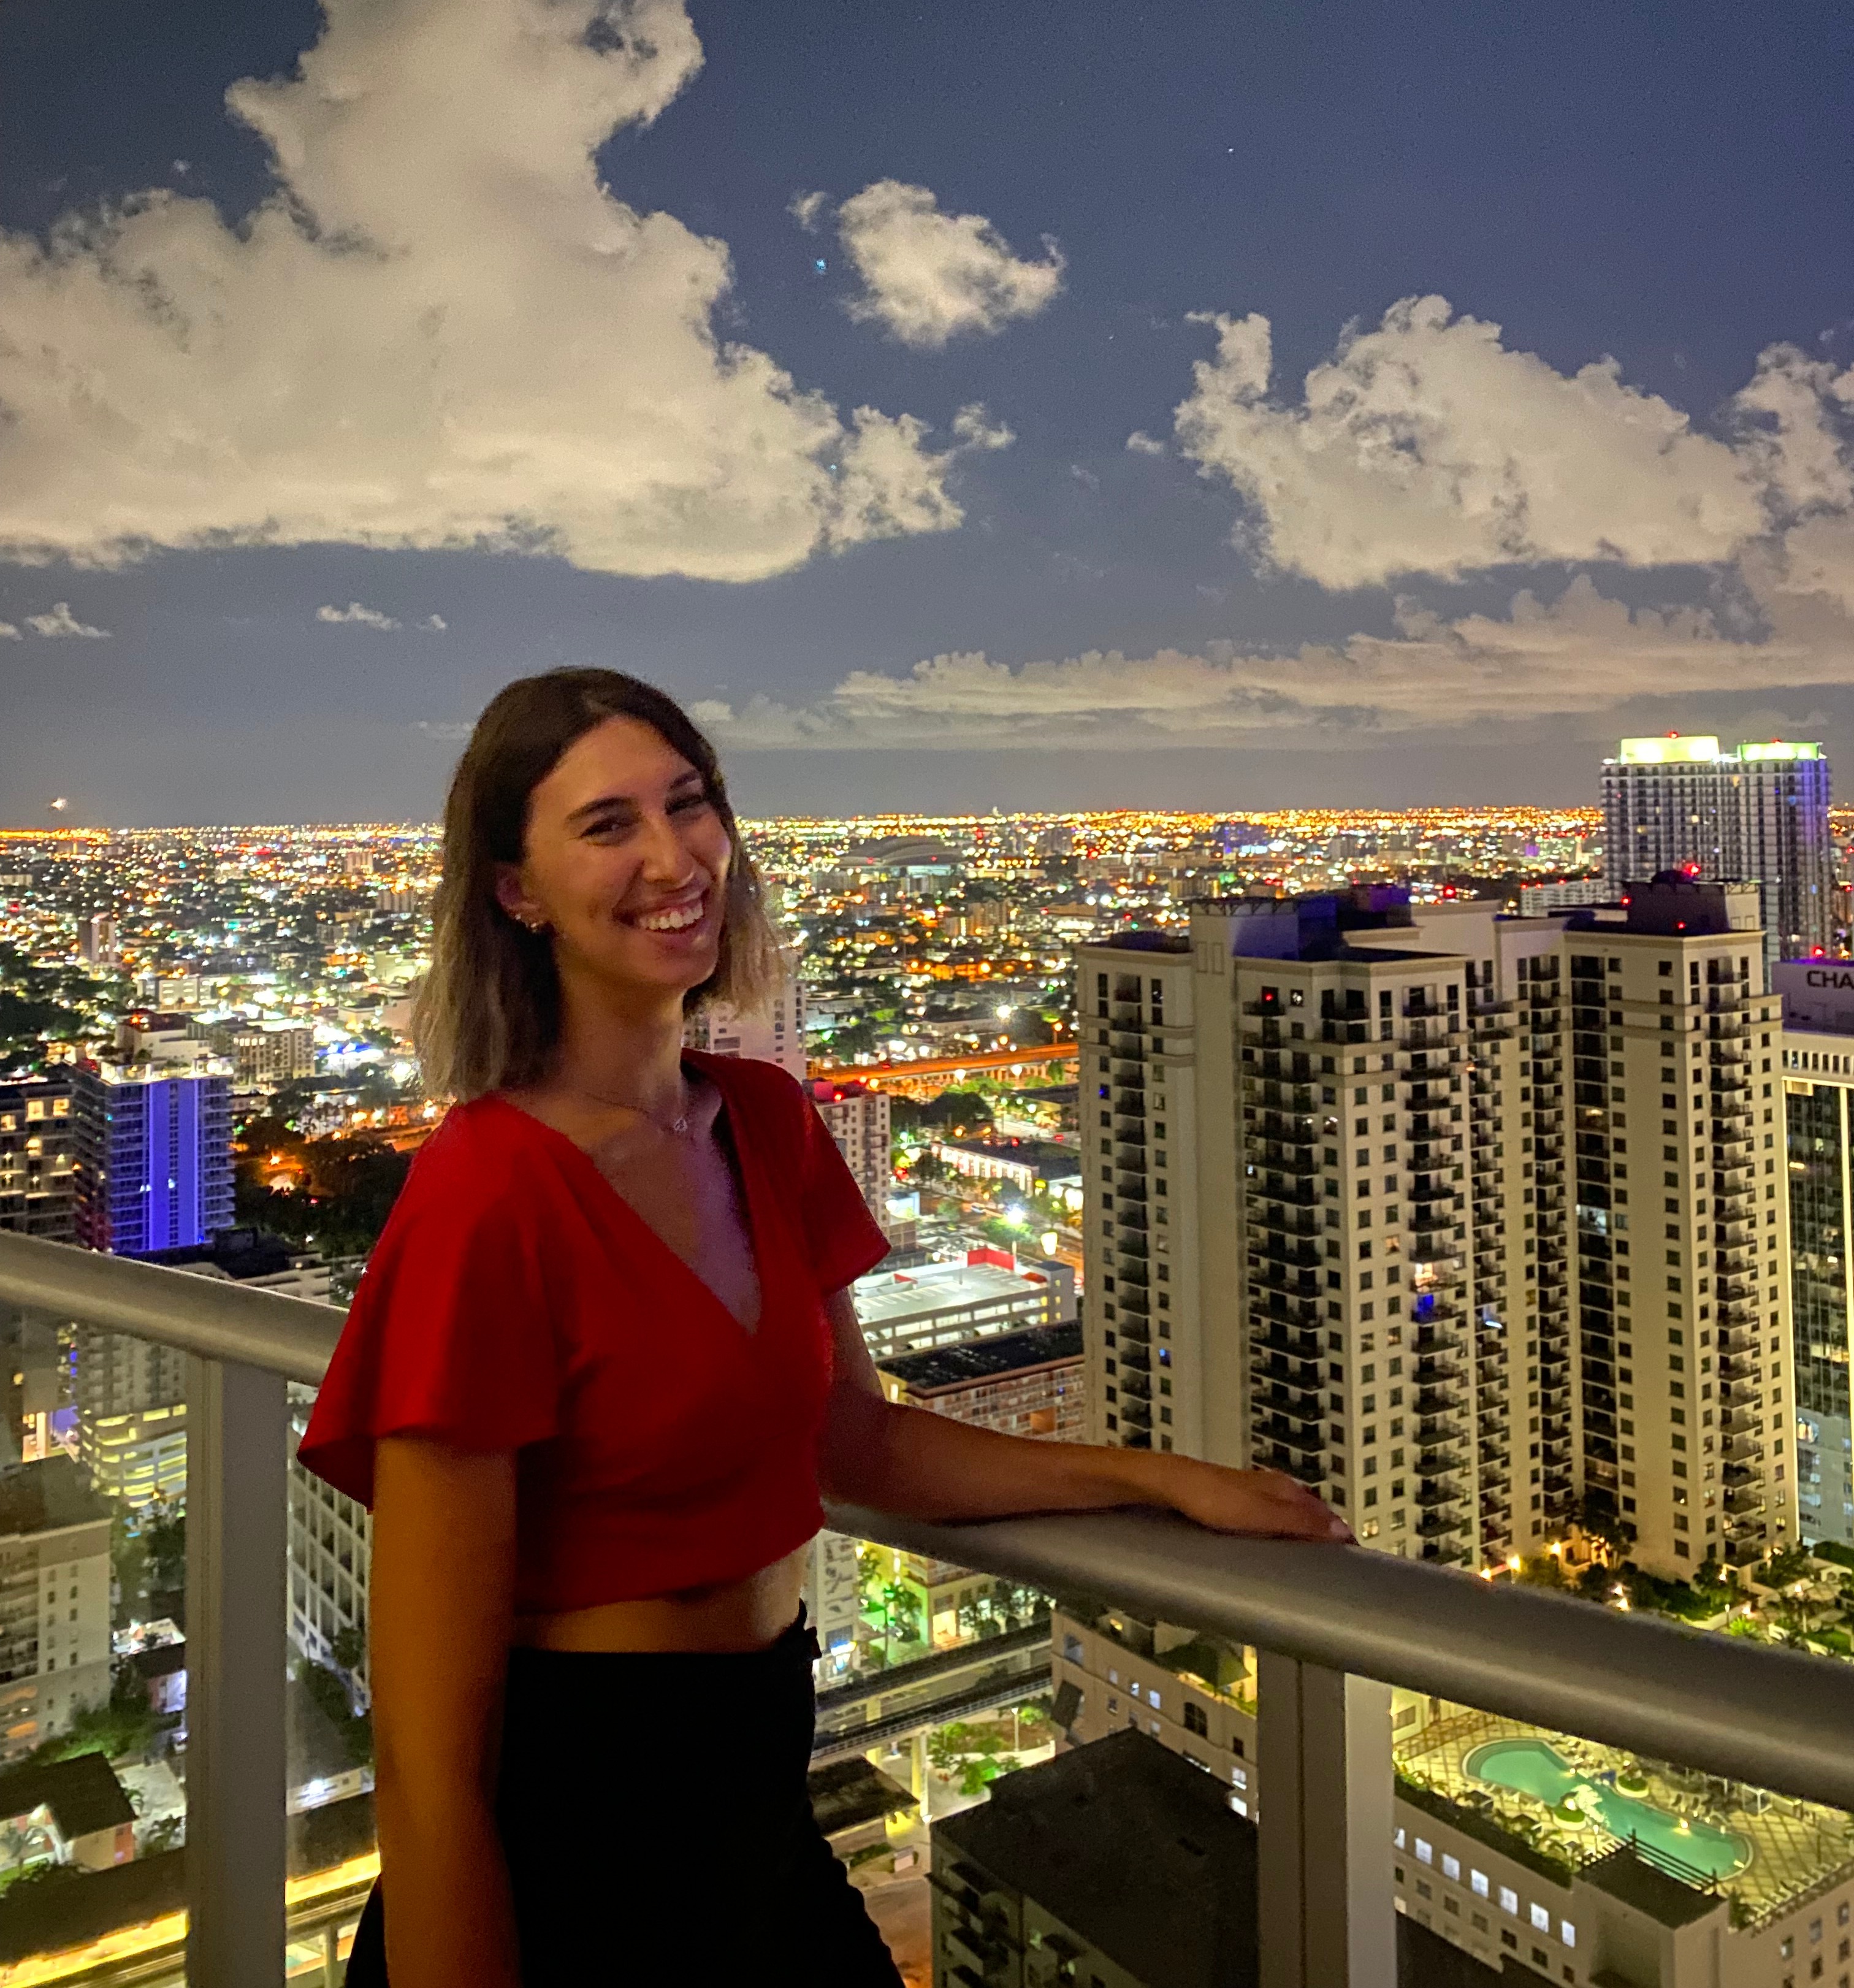 Ragazza con top rosso si affaccia ad una terrazza su Miami